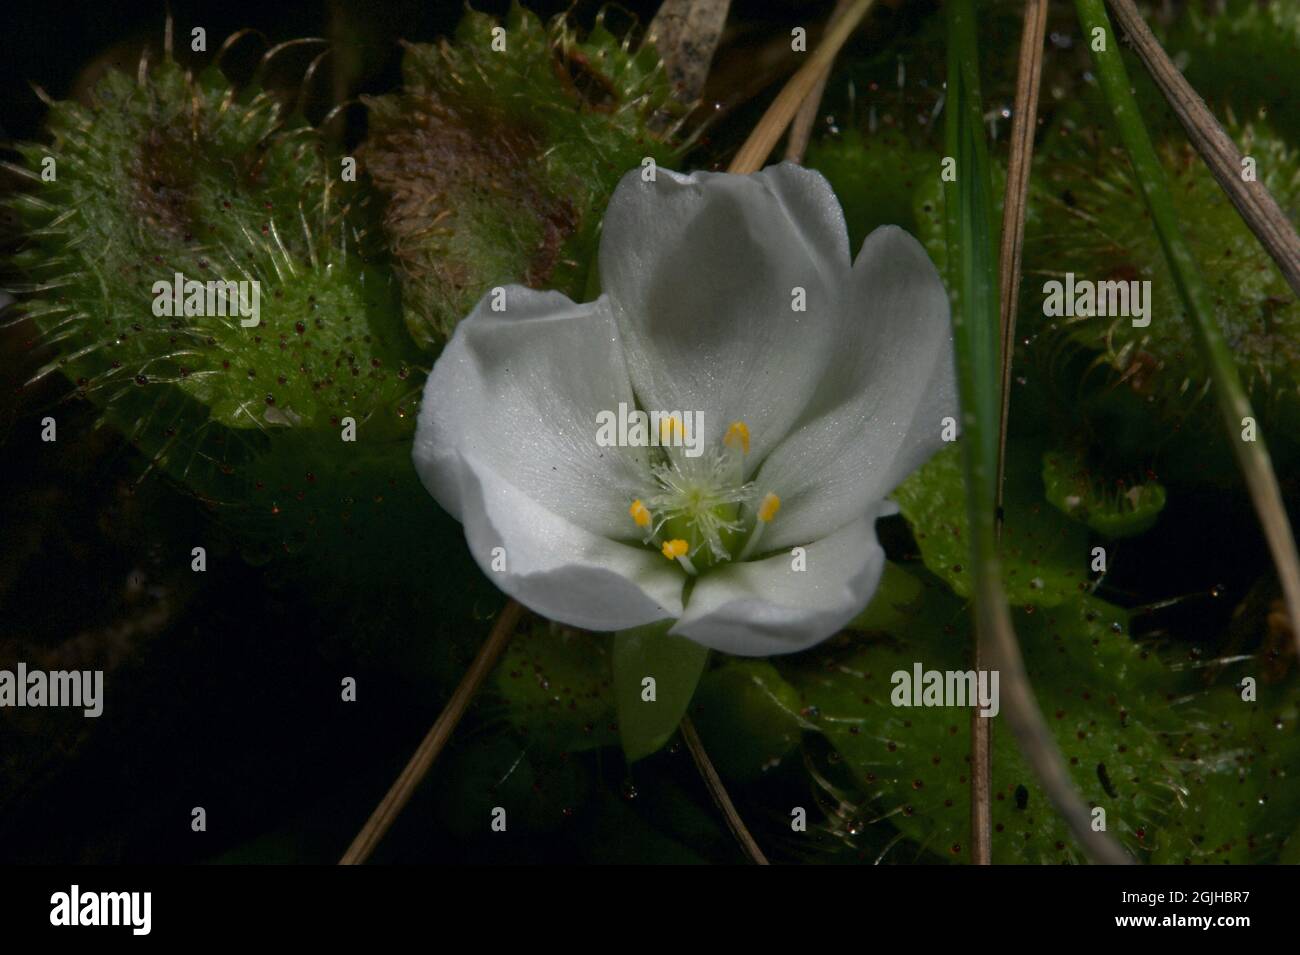 Ein duftend geduckter Sonnentau (Drosera Whitakerii) ist eine Freude, wenn er in der Blüte ist. Der Duft zieht Insekten an, die an den Blättern haften - und gegessen werden! Stockfoto